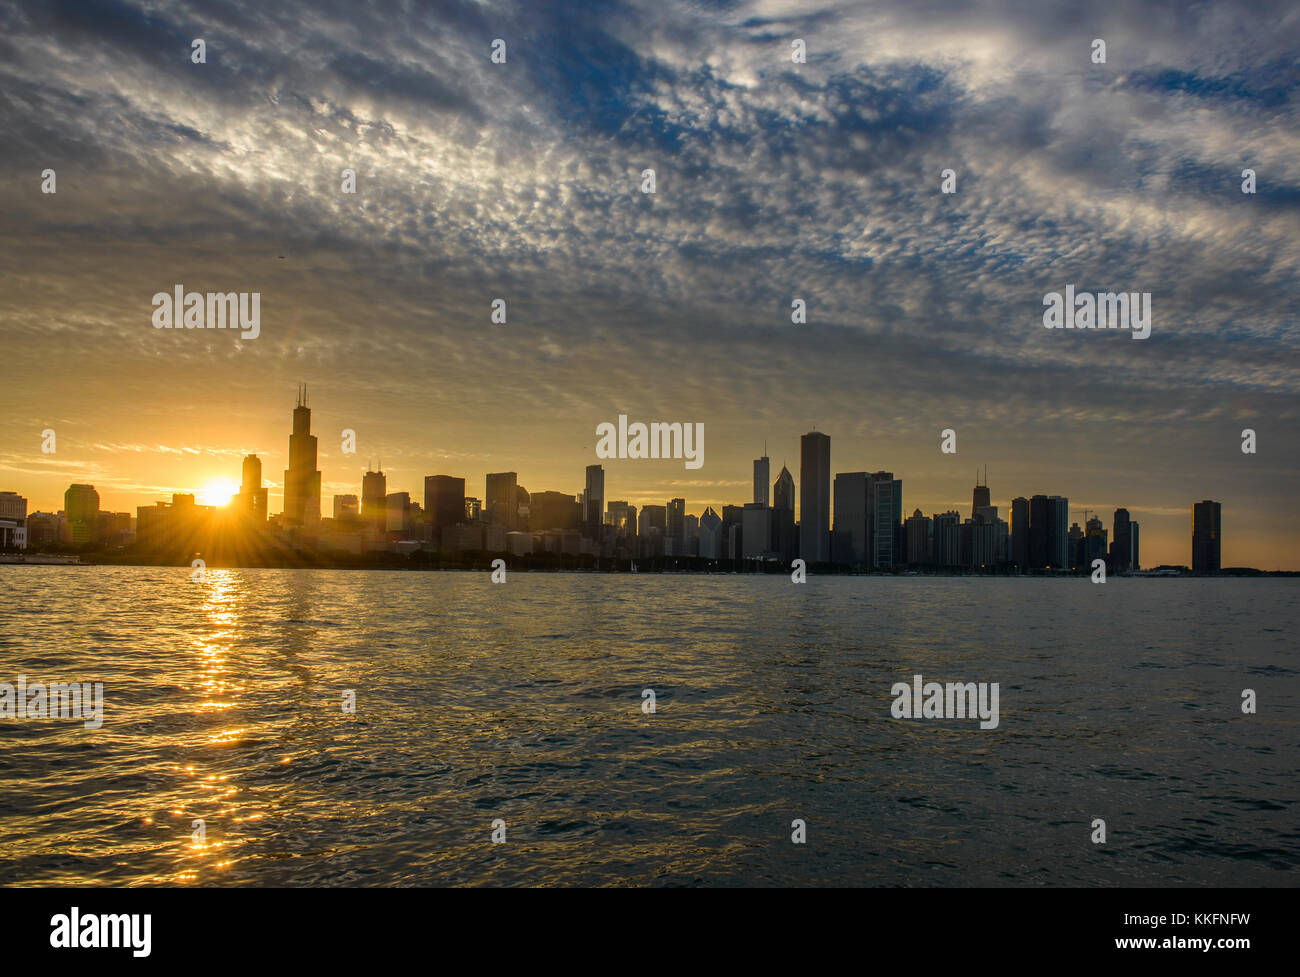 Skyline von Chicago bei Sonnenuntergang, USA | Skyline von Chicago bei Sonnenuntergang, USA Stockfoto